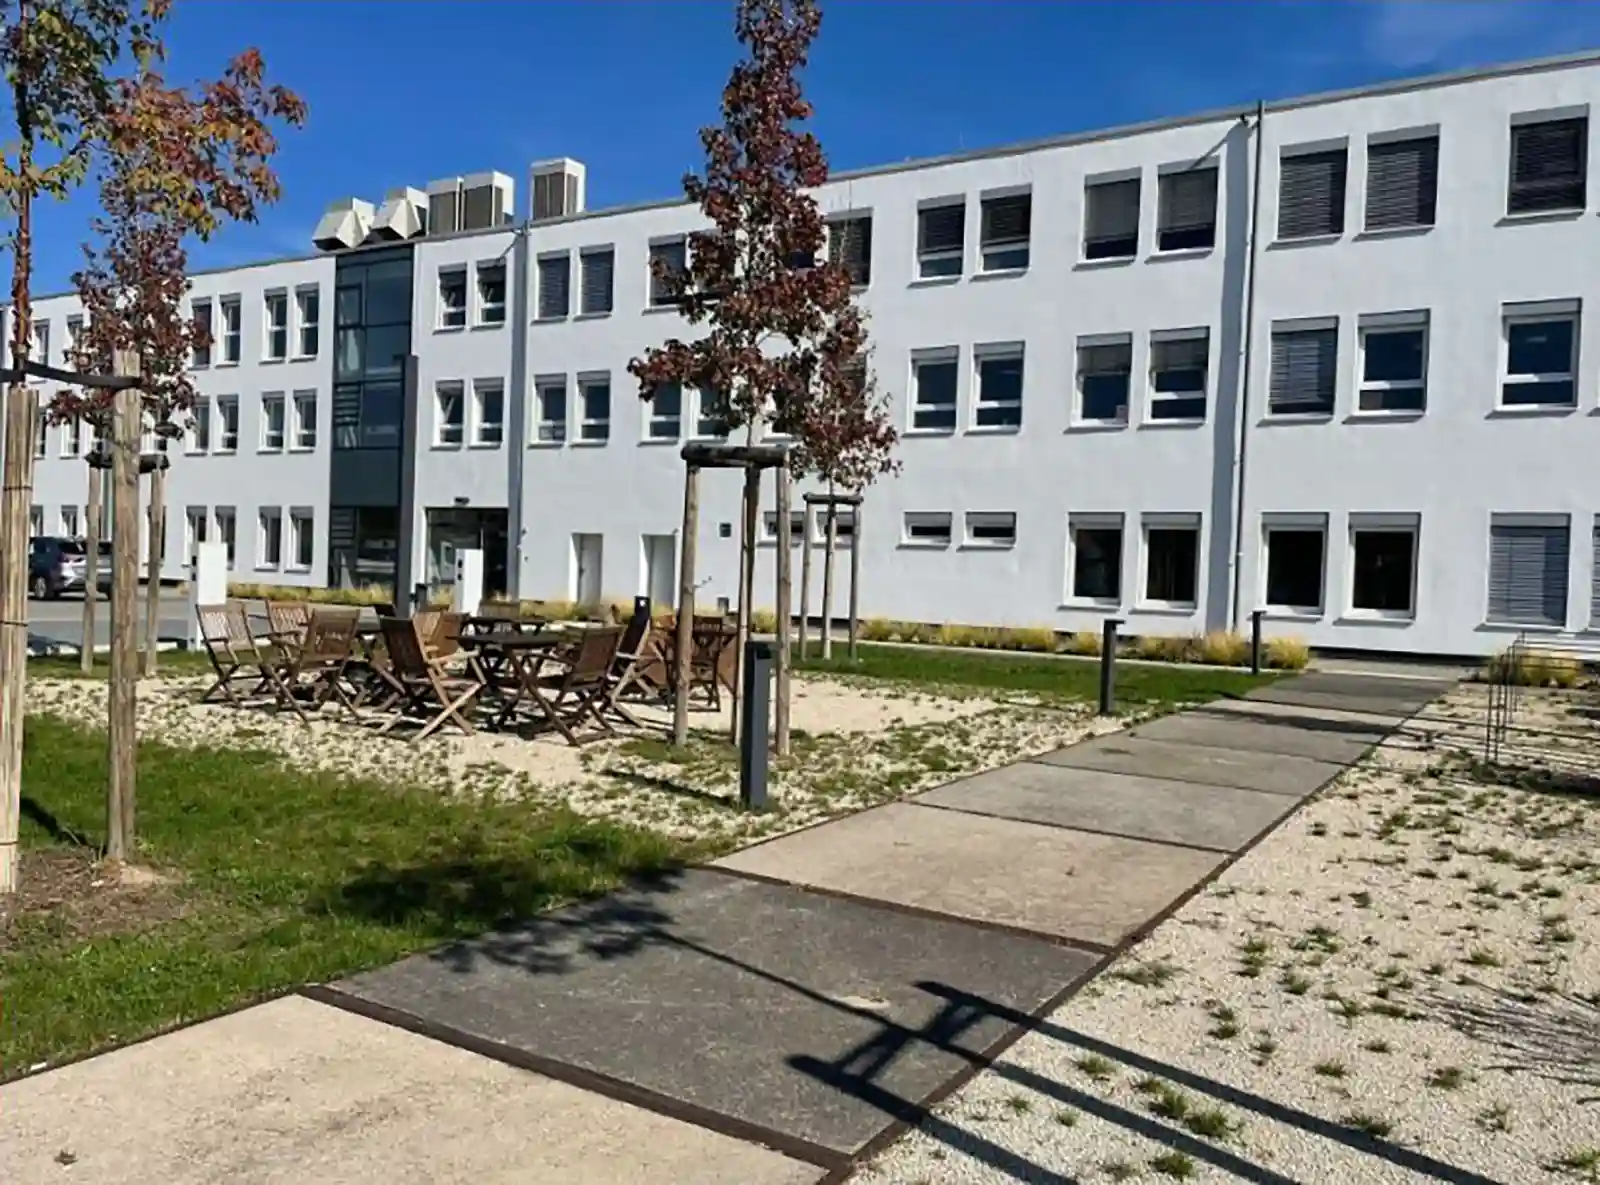 Kraftanlagen moves to new location in Mannheim’s industrial harbour